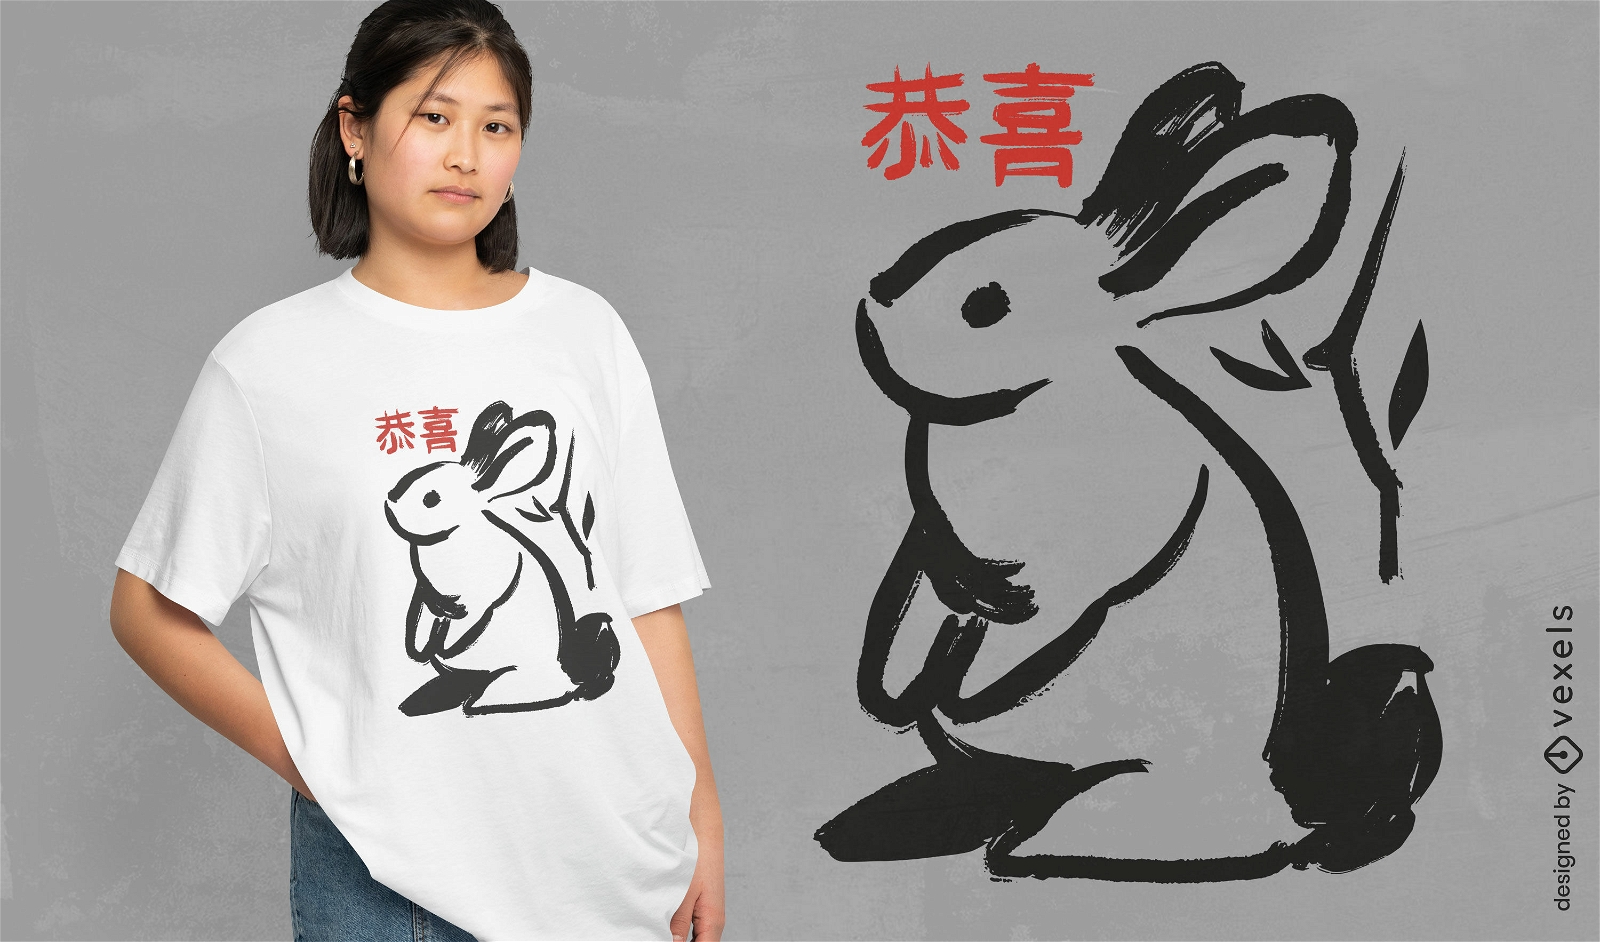 Dise?o de camiseta de conejo pintado a pincel.